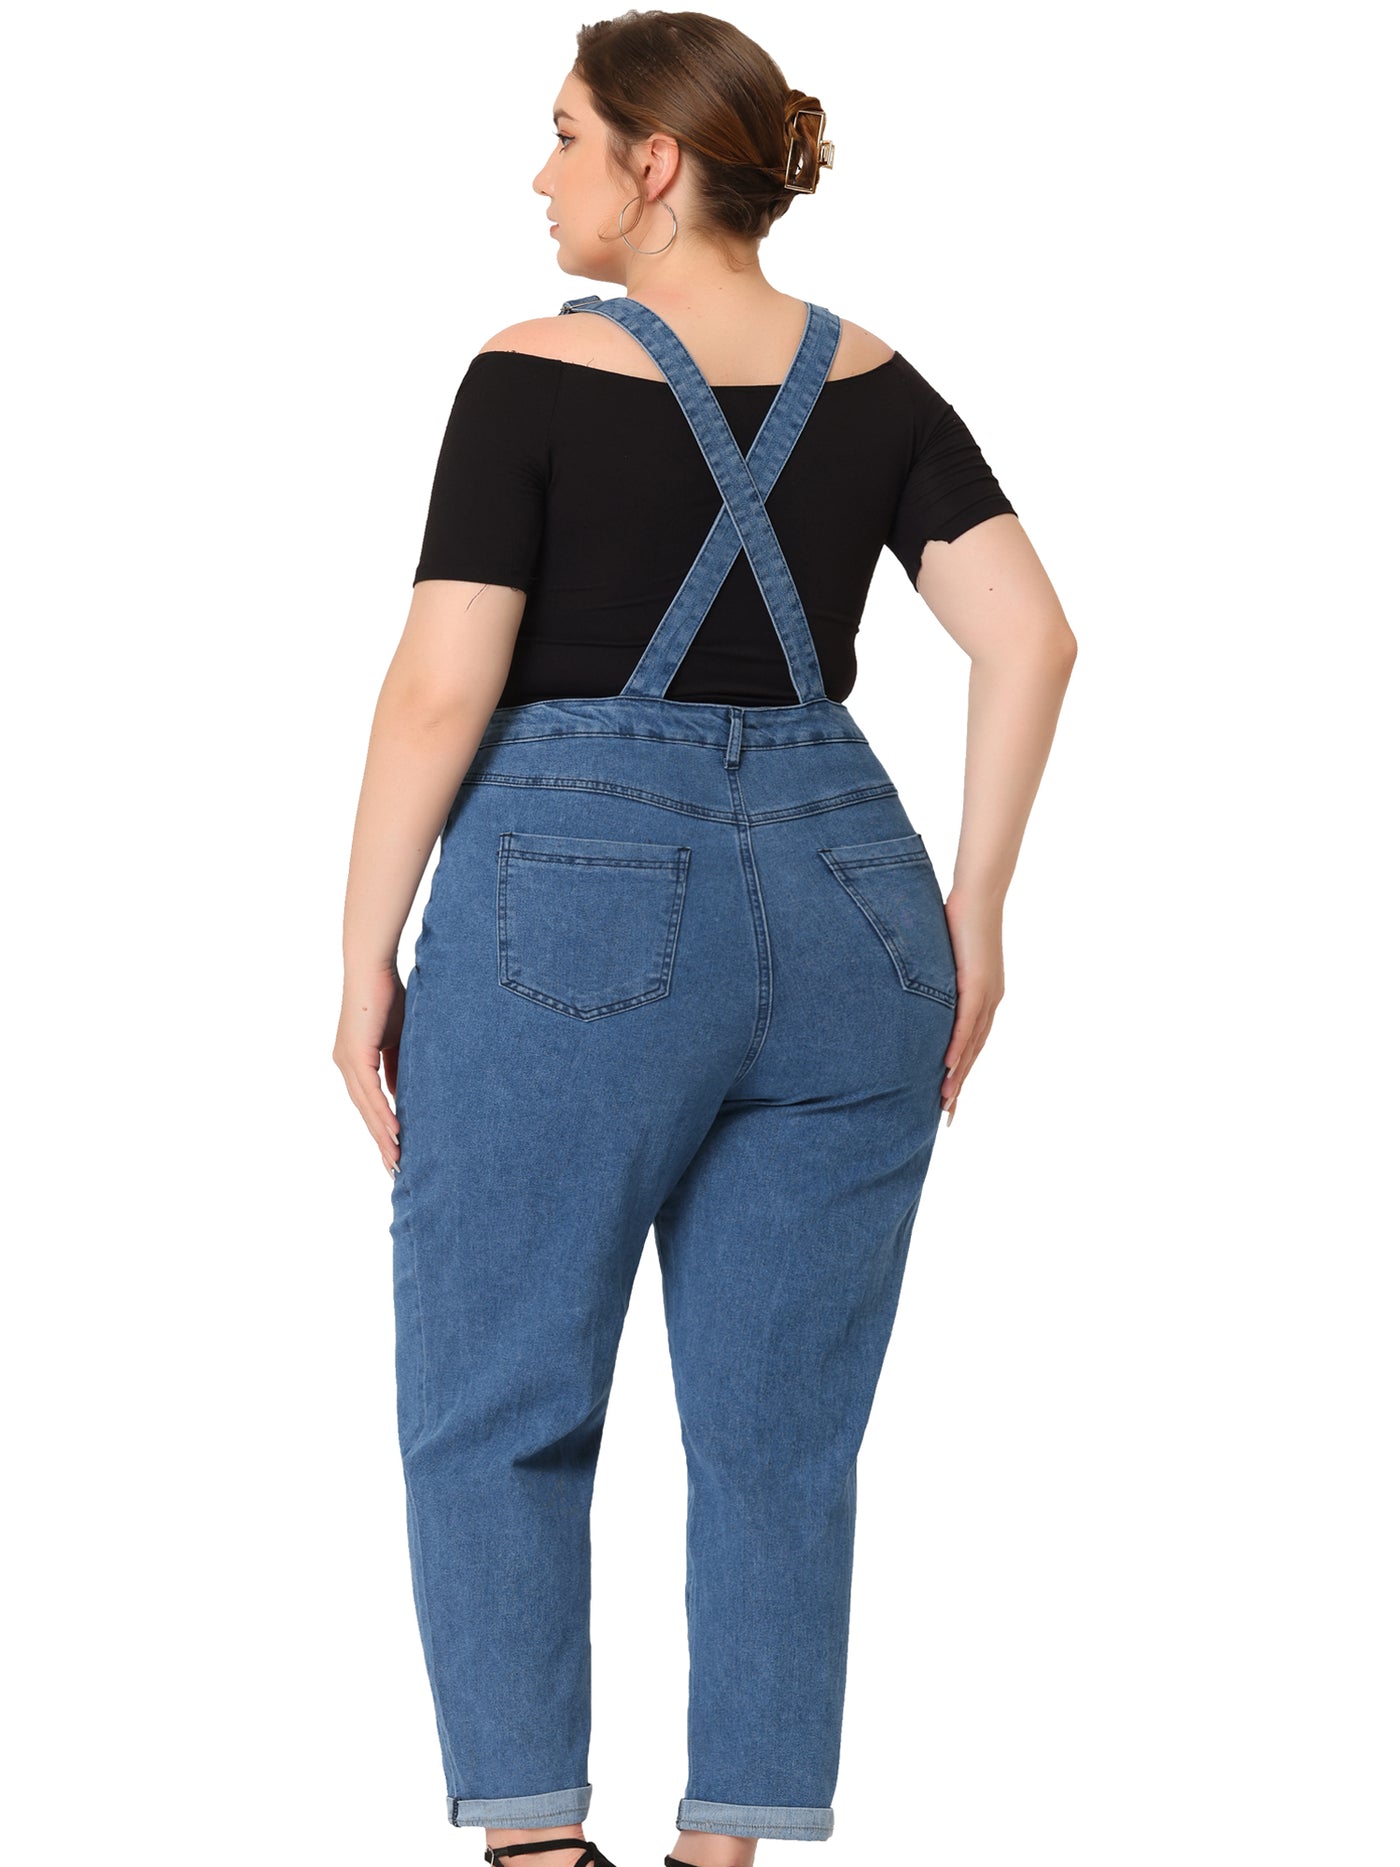 Bublédon Women's Plus Size Casual Stretch Adjustable Denim Bib Overalls Jeans Pants Jumpsuits